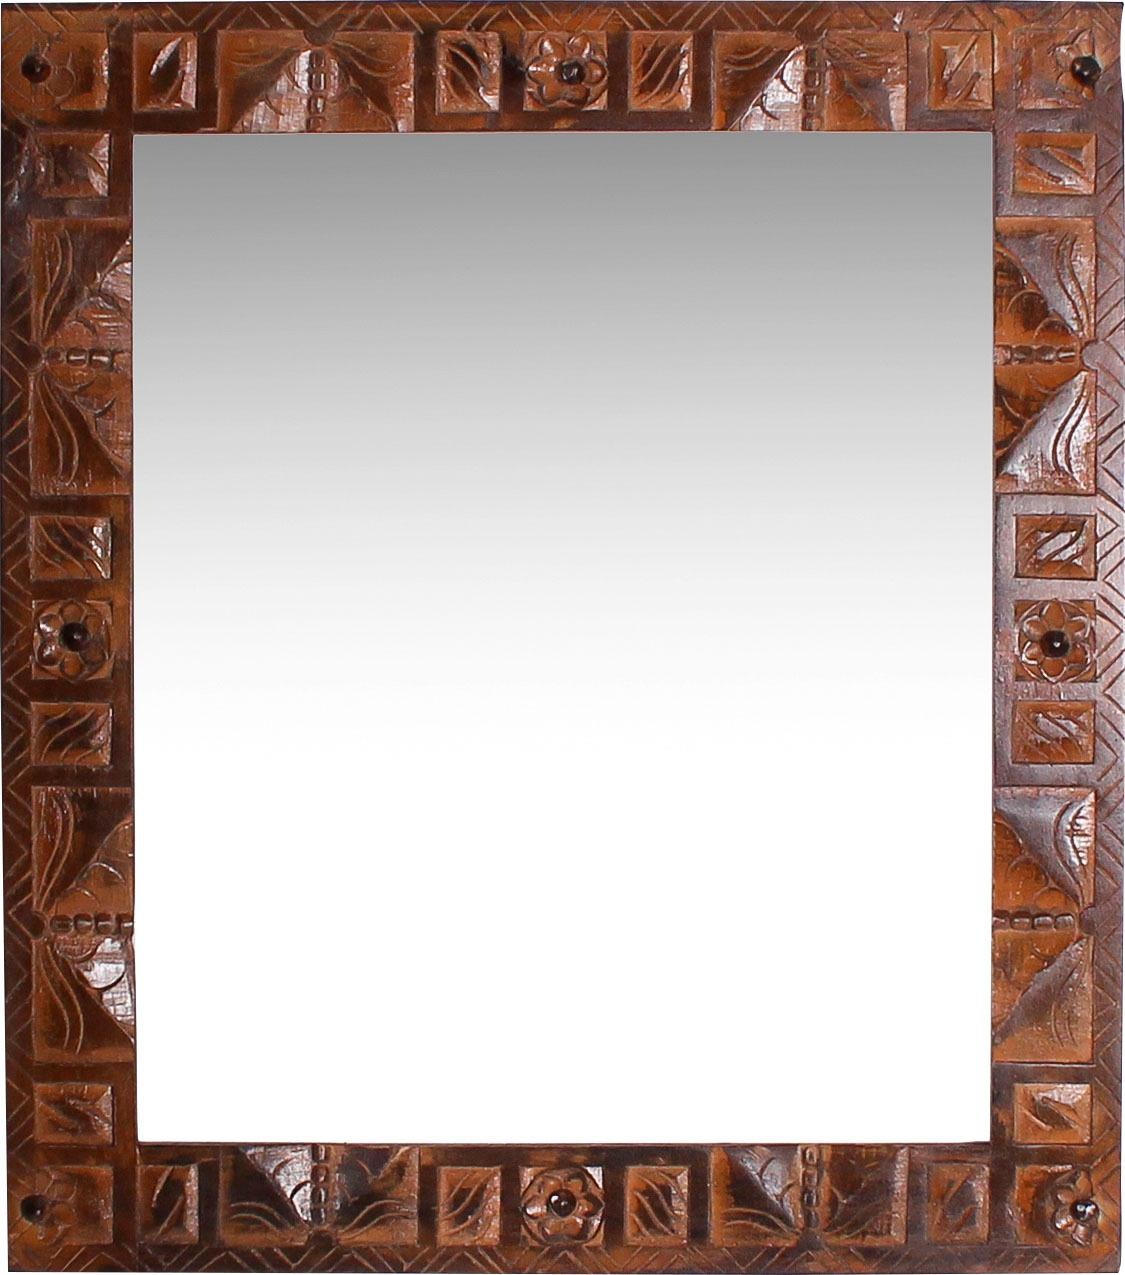 Artland Wandspiegel »Rahmenlos«, - rahmenloser Spiegel/Mirror zum Aufhängen  geeignet als Ganzkörperspiegel, Badspiegel/Badezimmerspiegel,  Schminkspiegel, Flurspiegel, kleiner Spiegel für Gäste-WC oder  Wohnzimmerspiegel, inkl. Aufhänger für die Wand